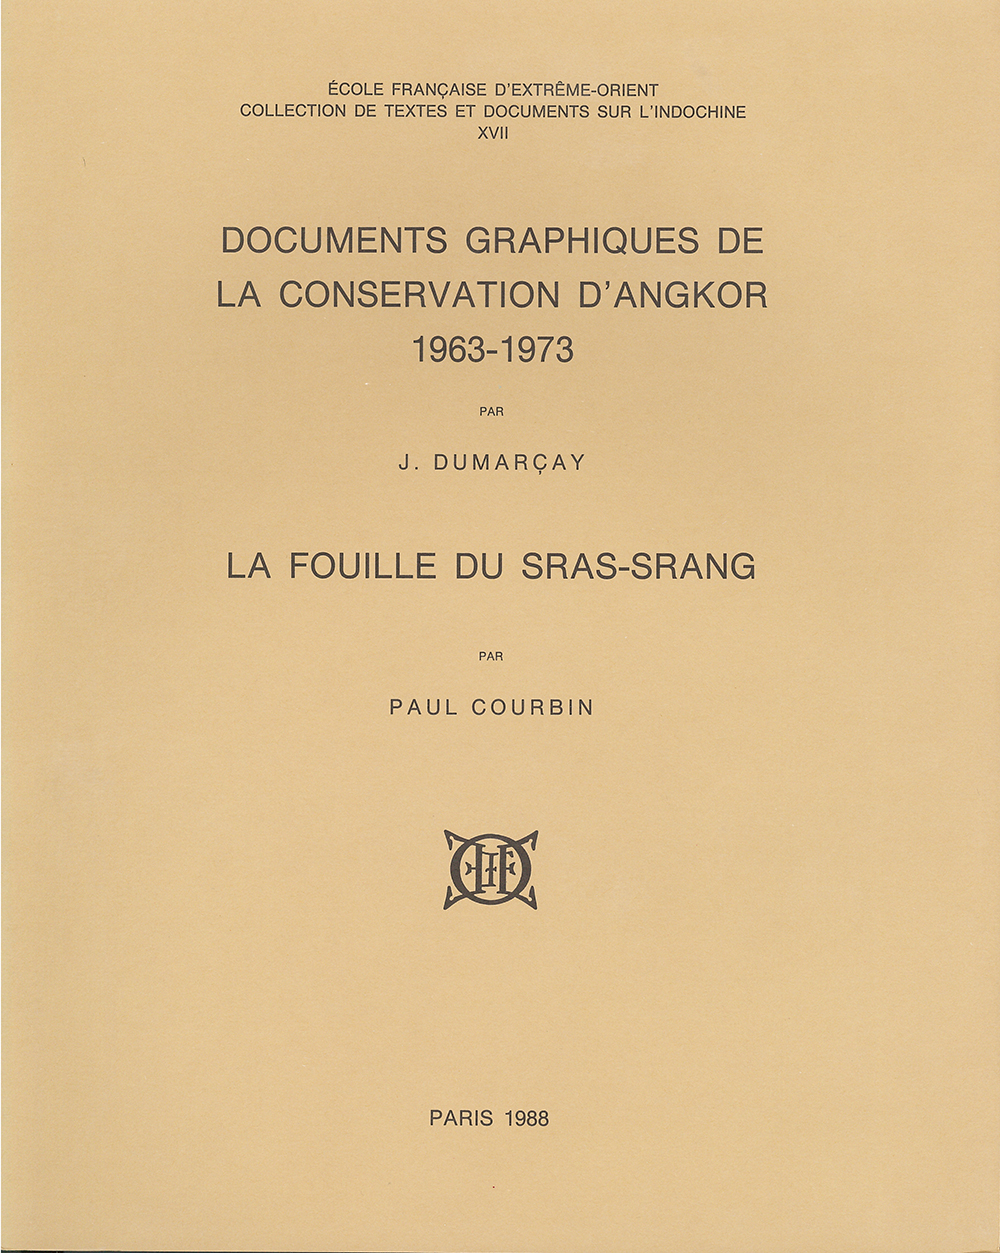 Documents graphiques de la conservation d'Angkor 1963-1973 / La fouille du Sras-srang